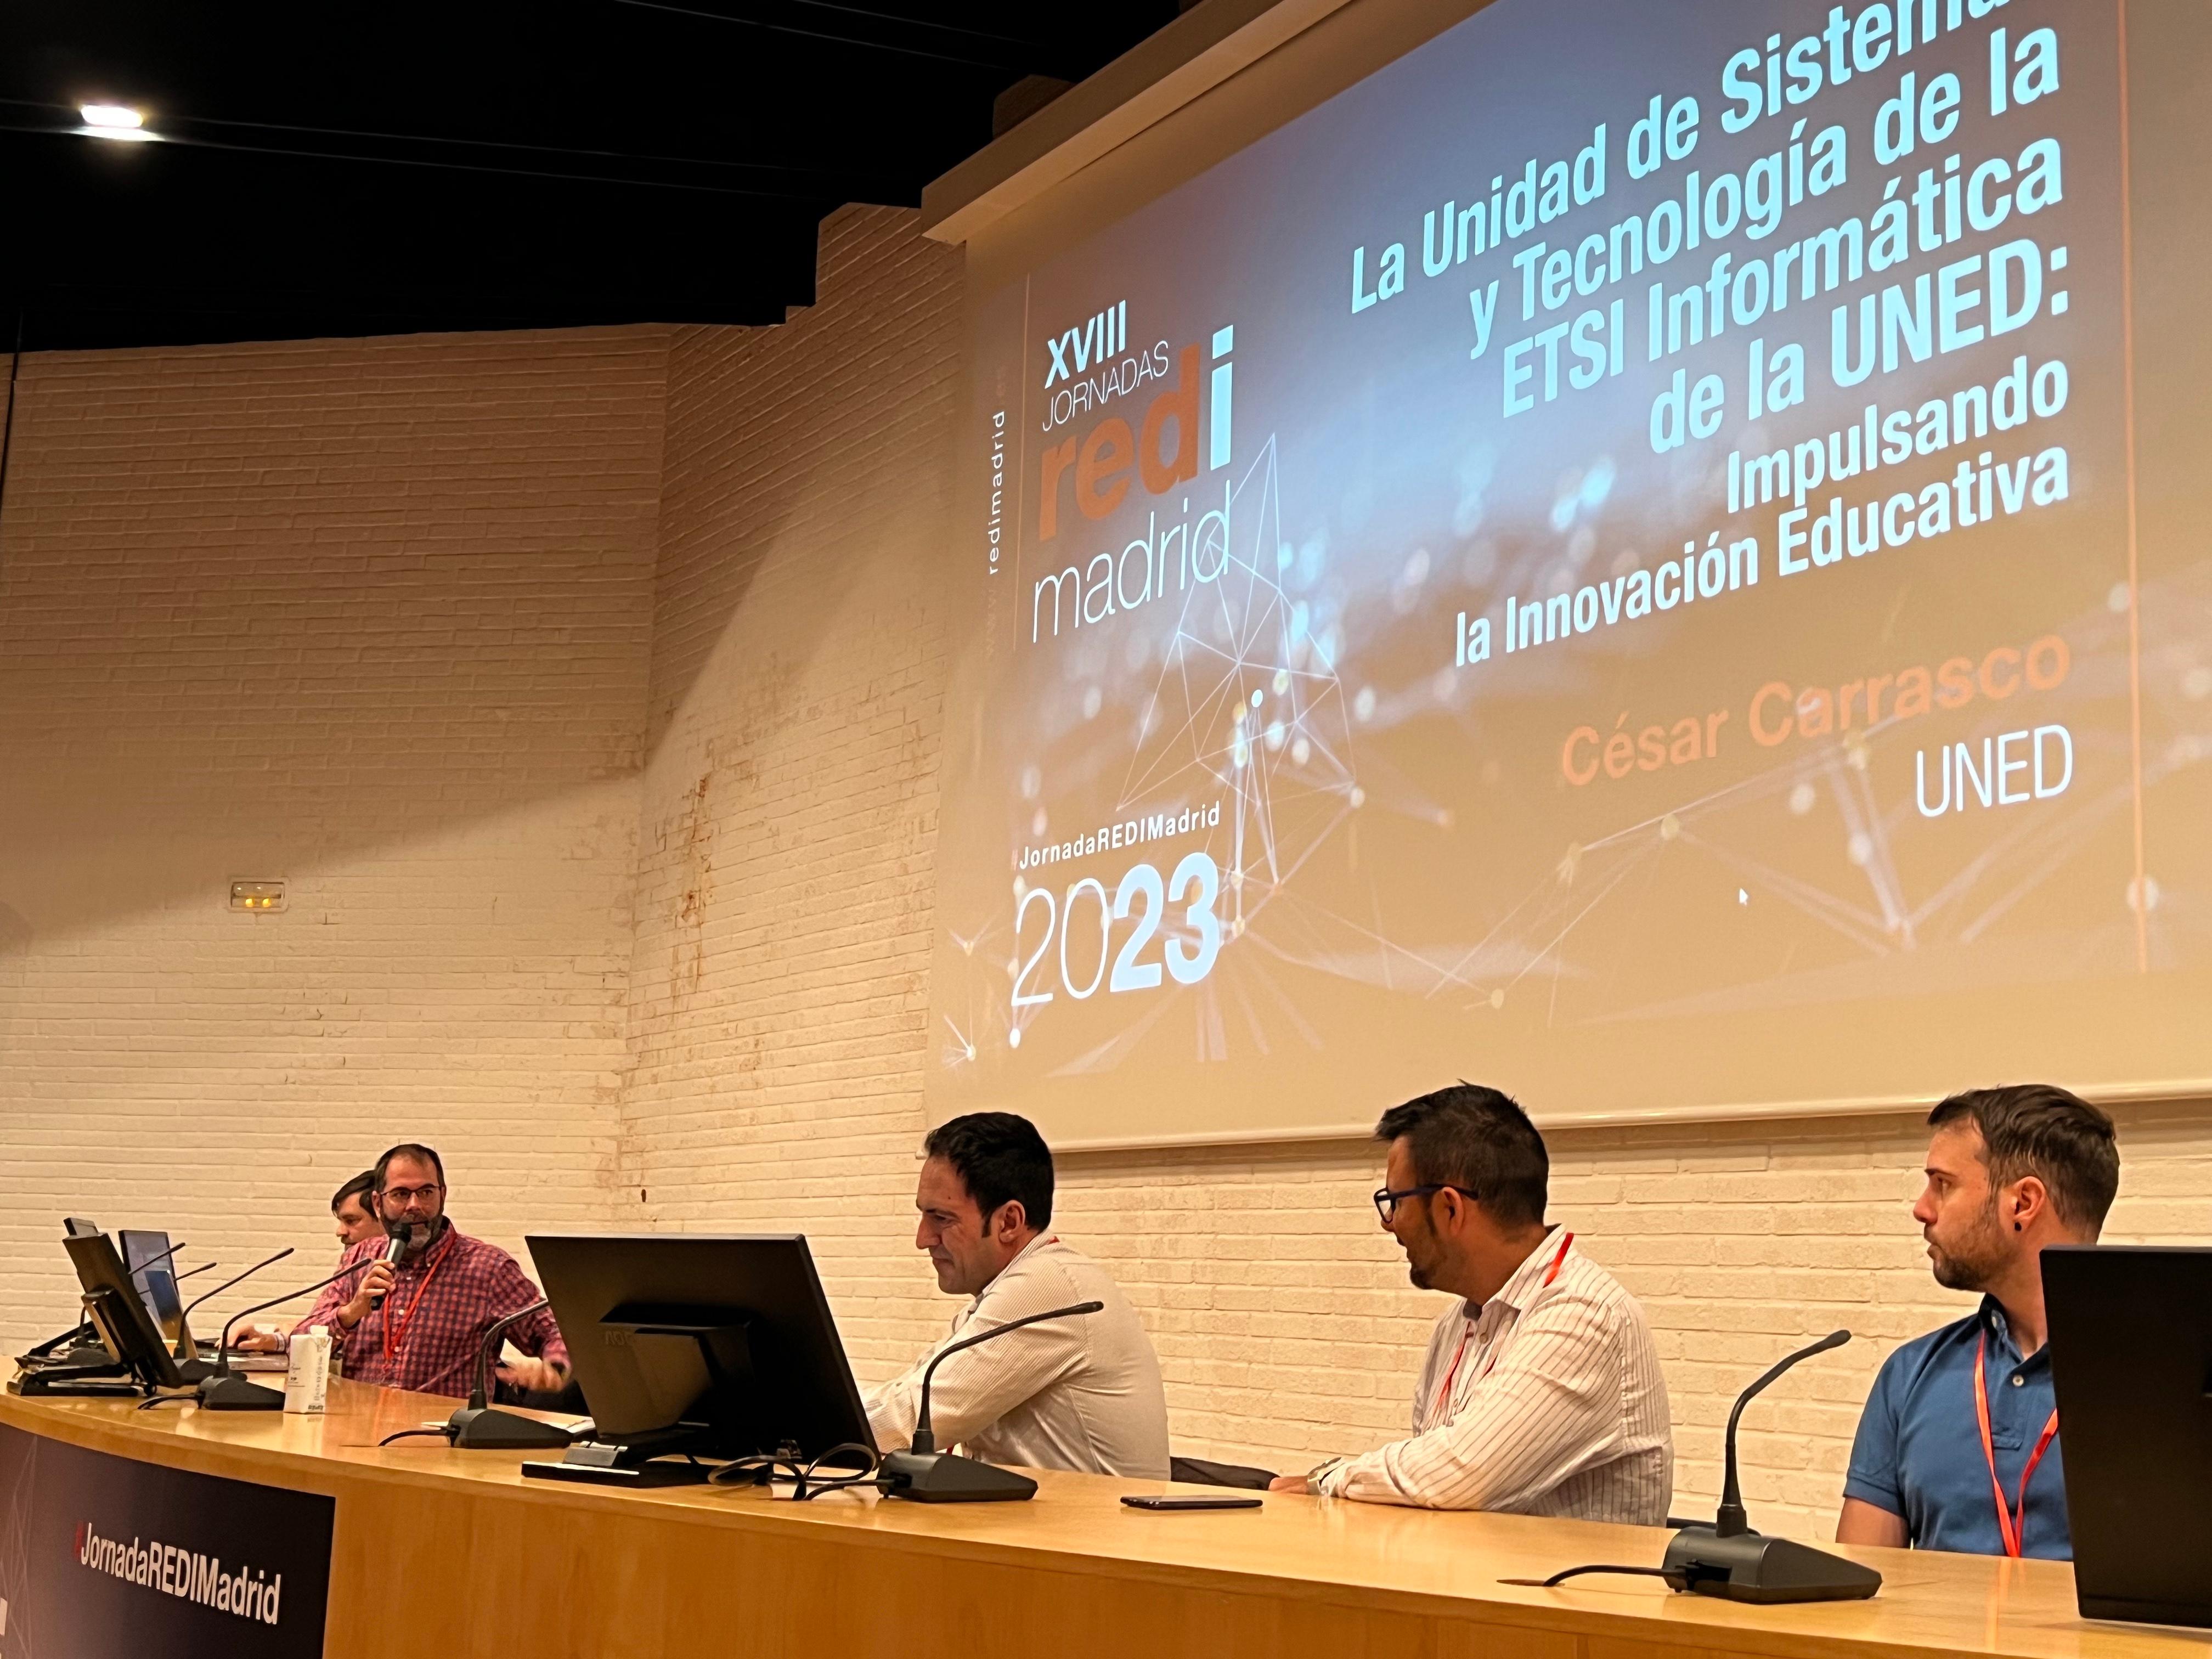 Charla REDIMADRID: La Unidad de Sistemas y Tecnología de la ETSI Informática de la UNED: Impulsando la Innovación Educativa